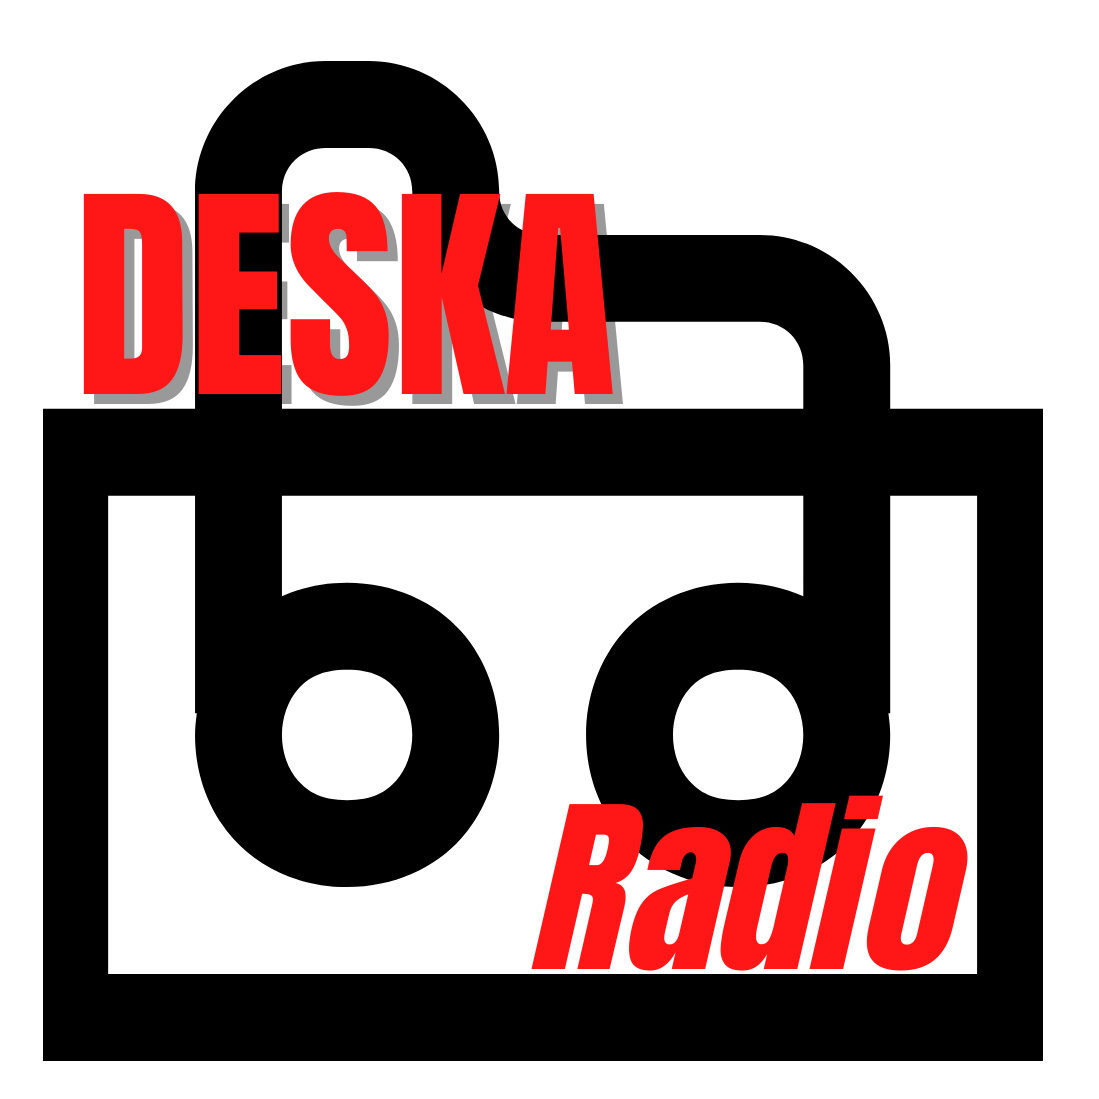 Deska Radio